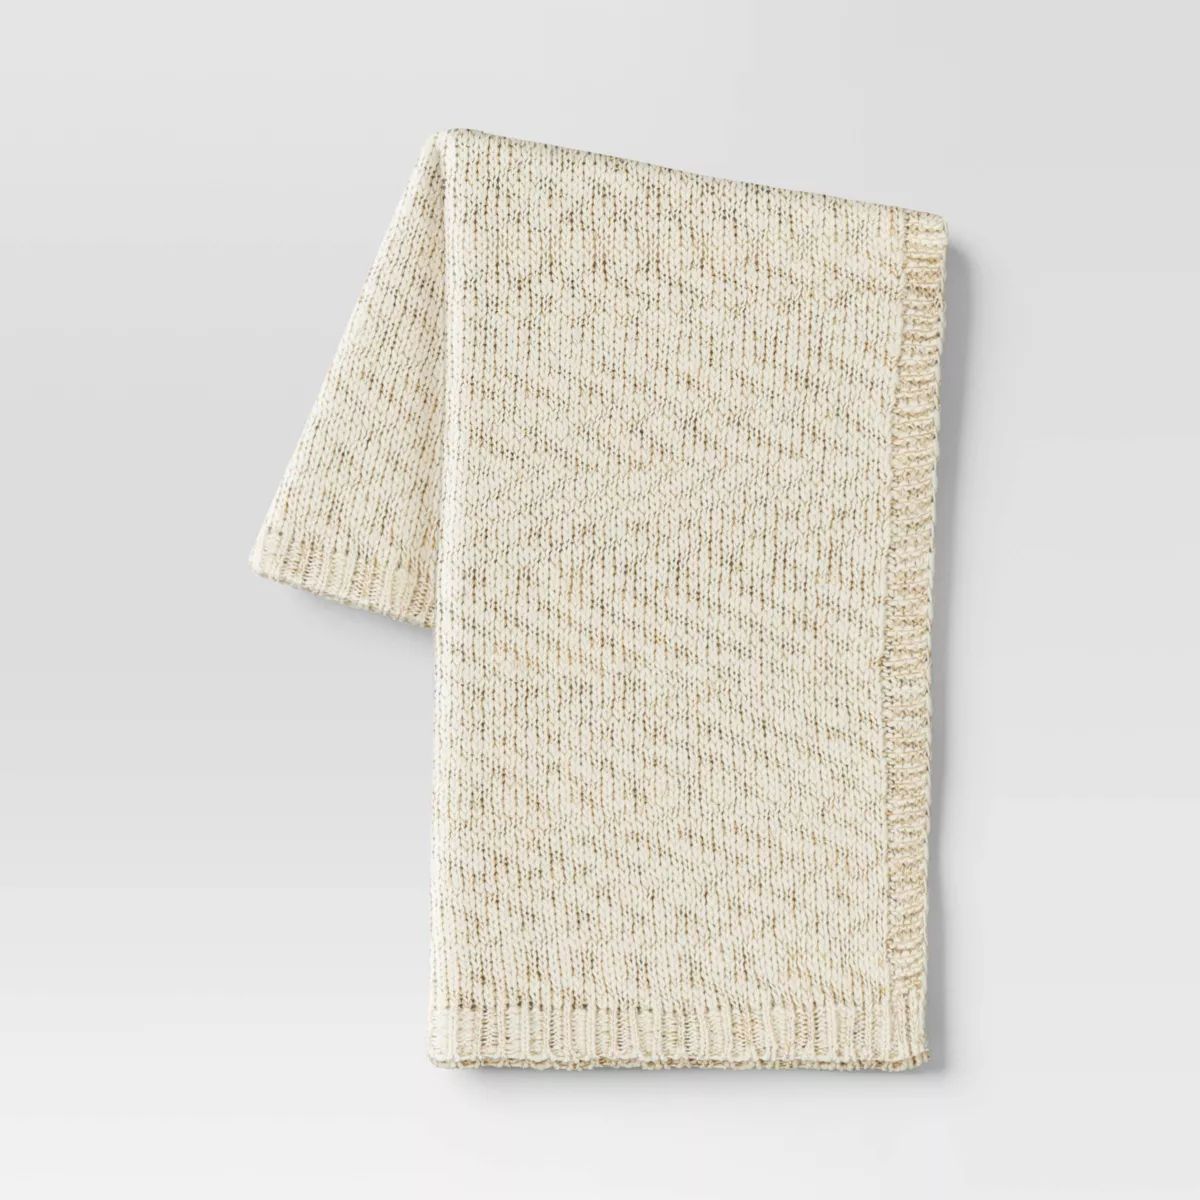 Metallic Knit Throw Blanket Ivory - Threshold™ | Target